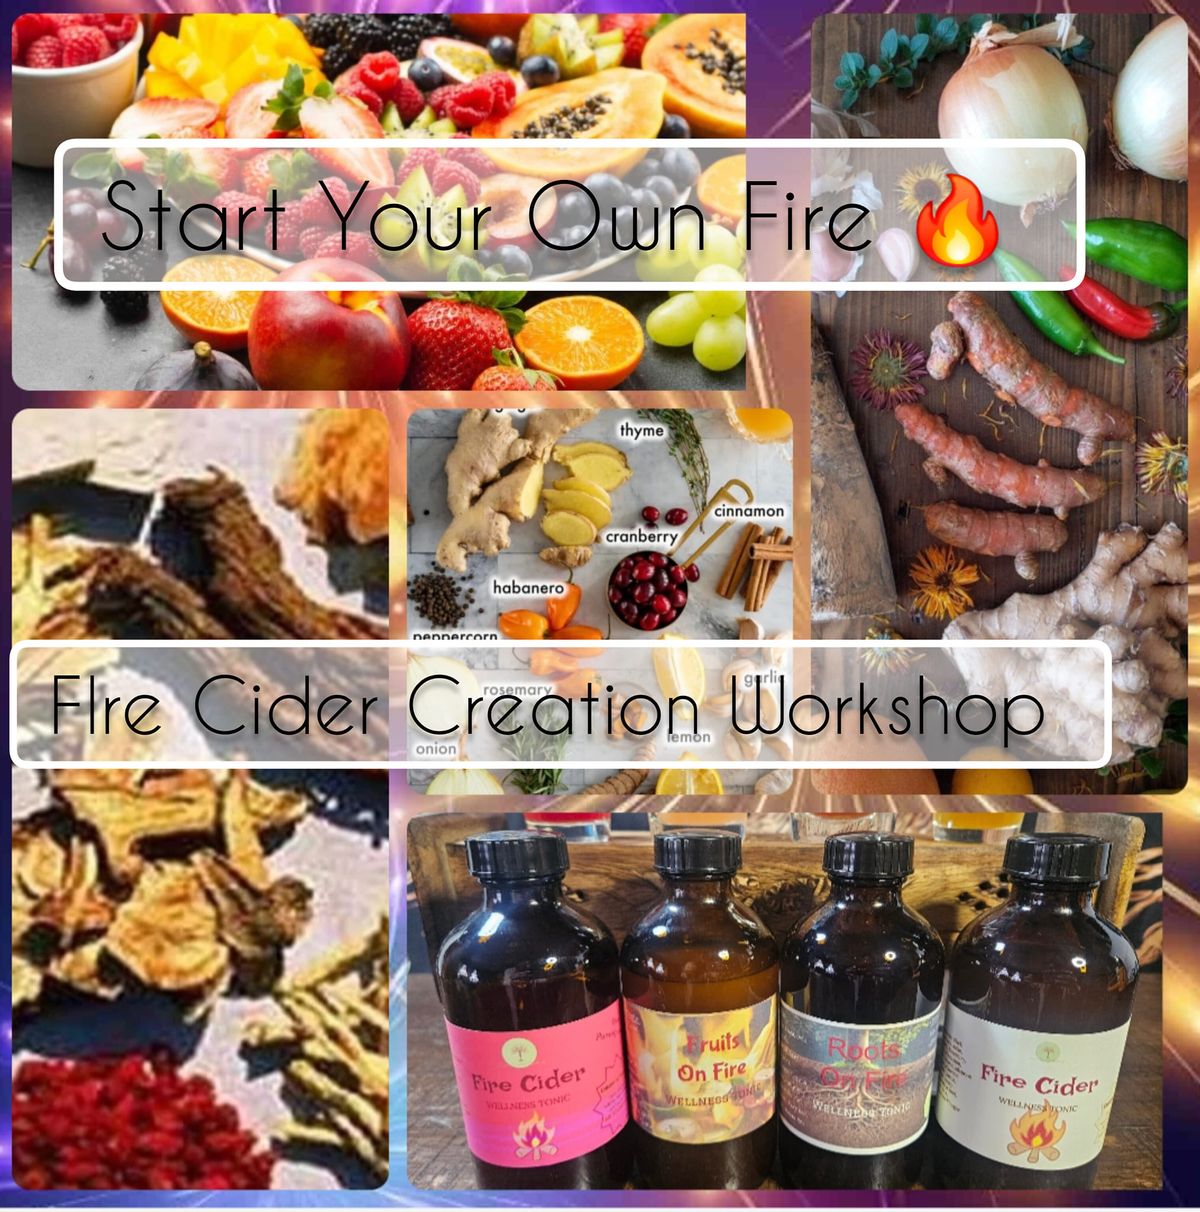 Start Your Own Fire \ud83d\udd25  Fire Cider Creation Workshop 